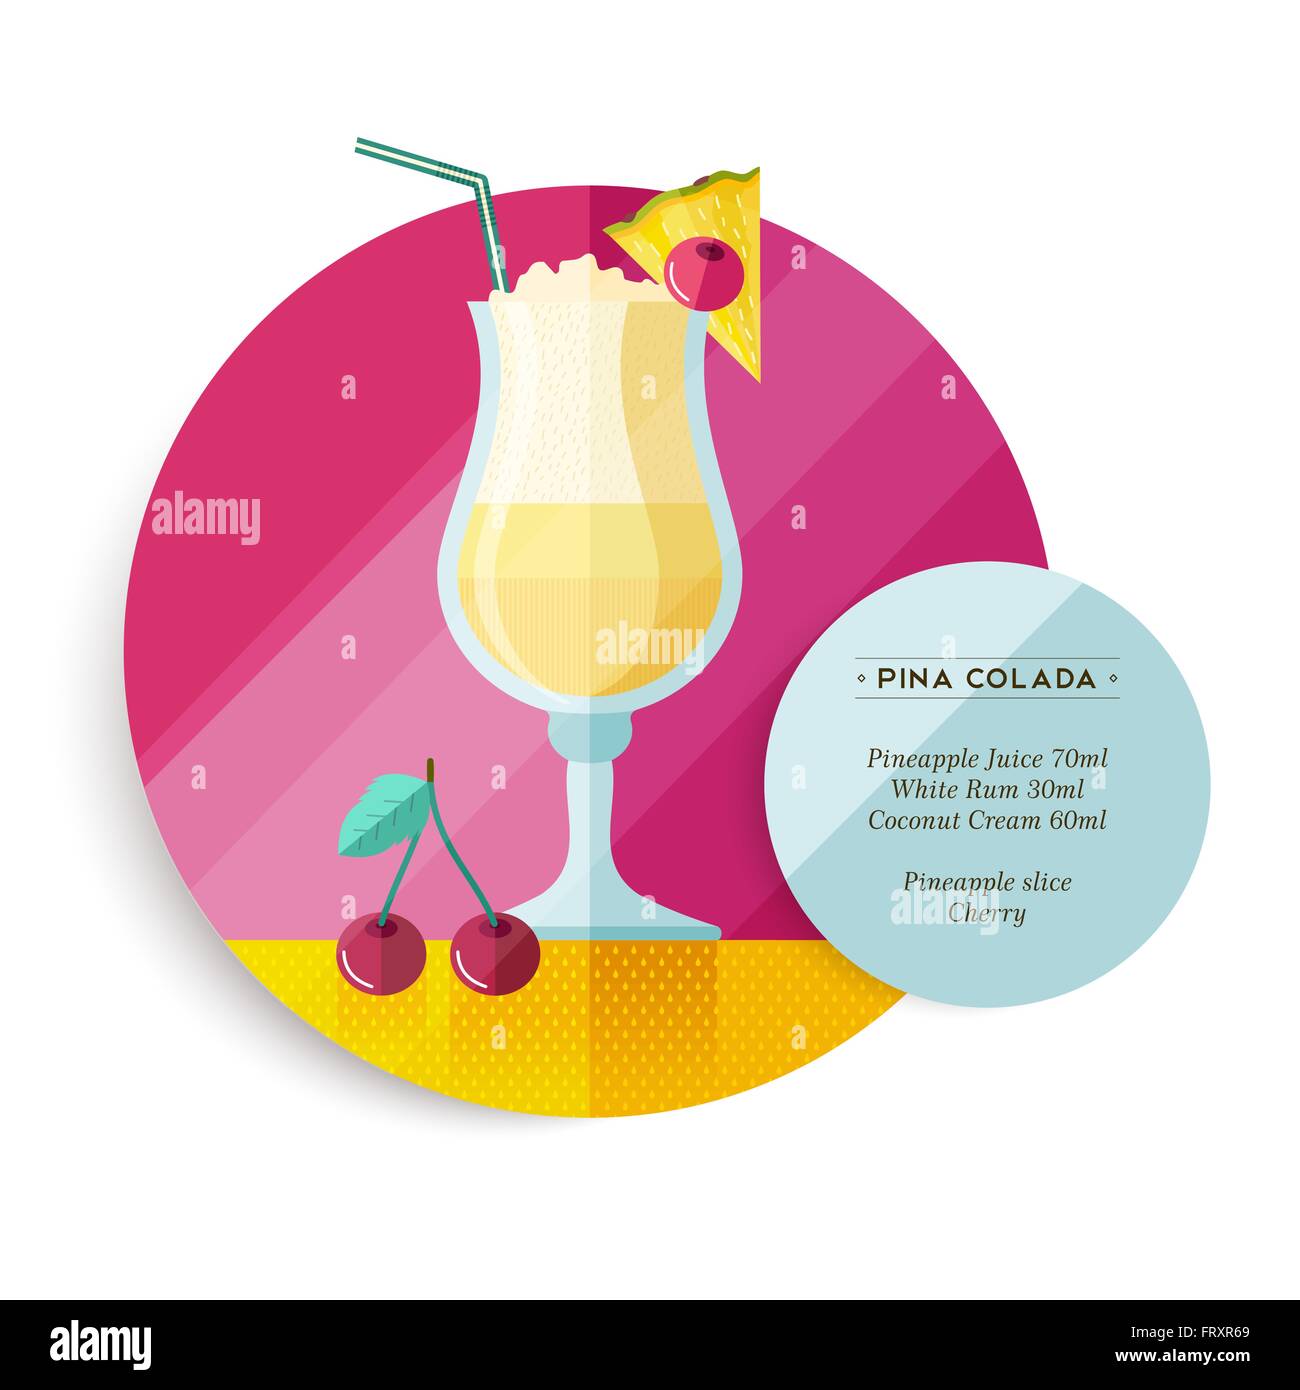 Recette cocktail pina colada pour partie d'été ou avec des ingrédients du texte et de l'art illustration fruits colorés télévision. Illustration de Vecteur